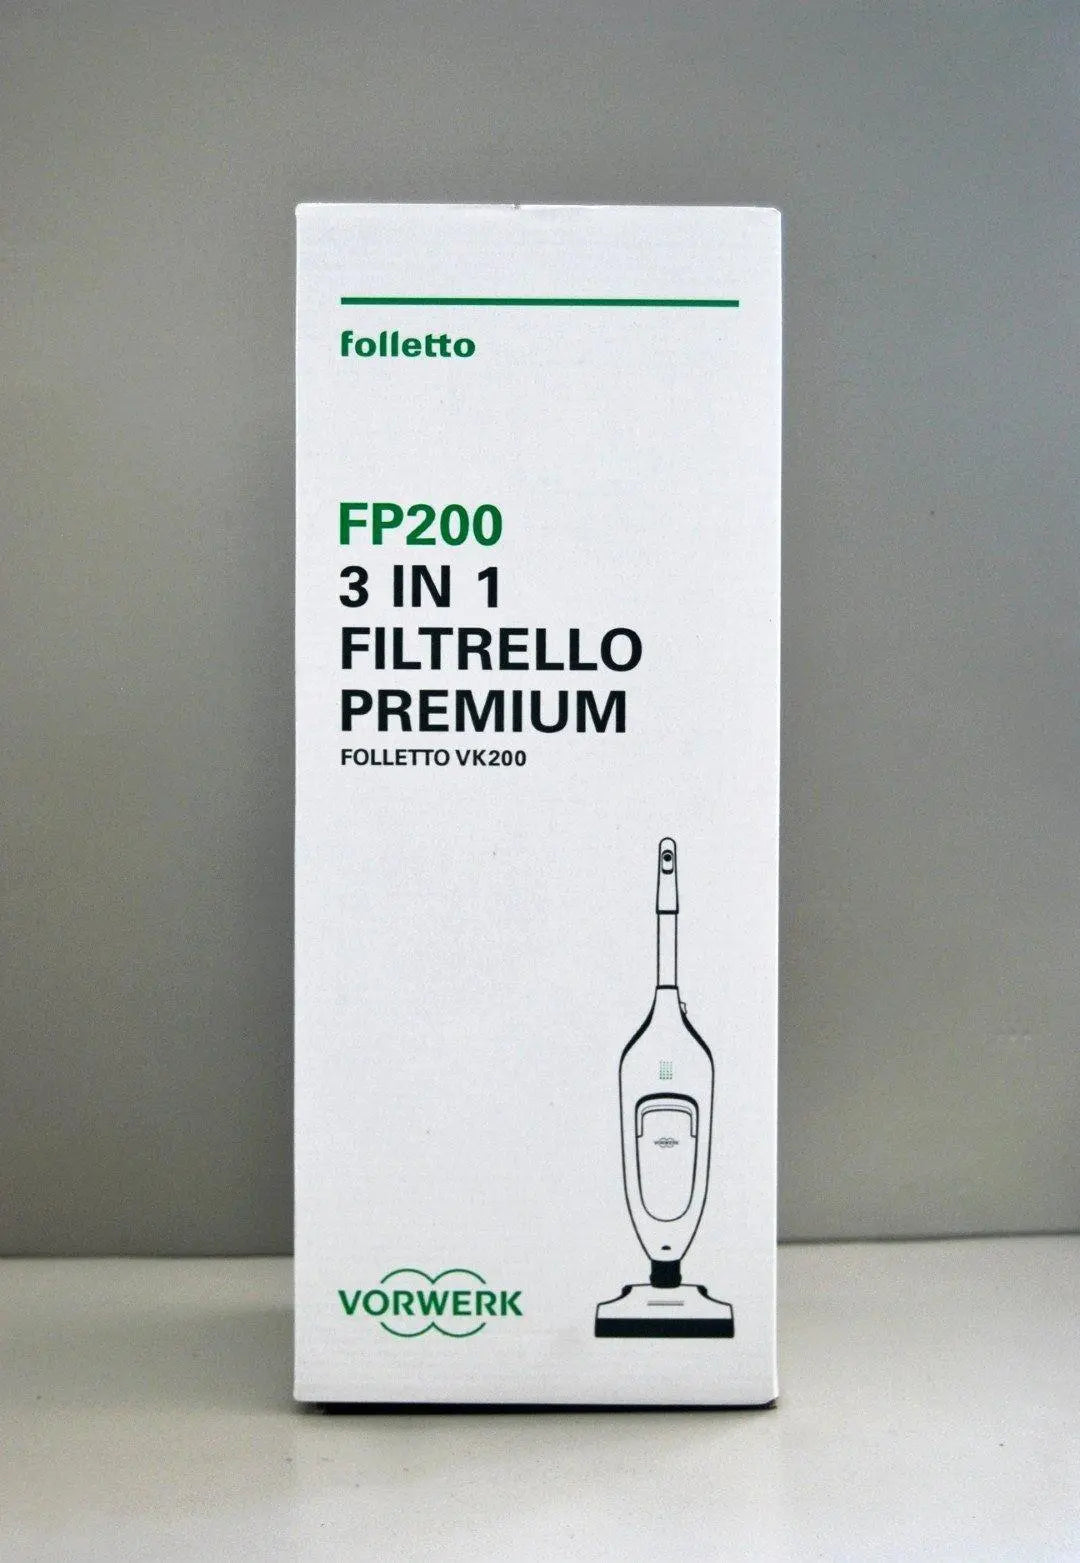 Confezione sacchetti Filtrello Premium FP200 VK200 Vorwerk Folletto VORWERK FOLLETTO